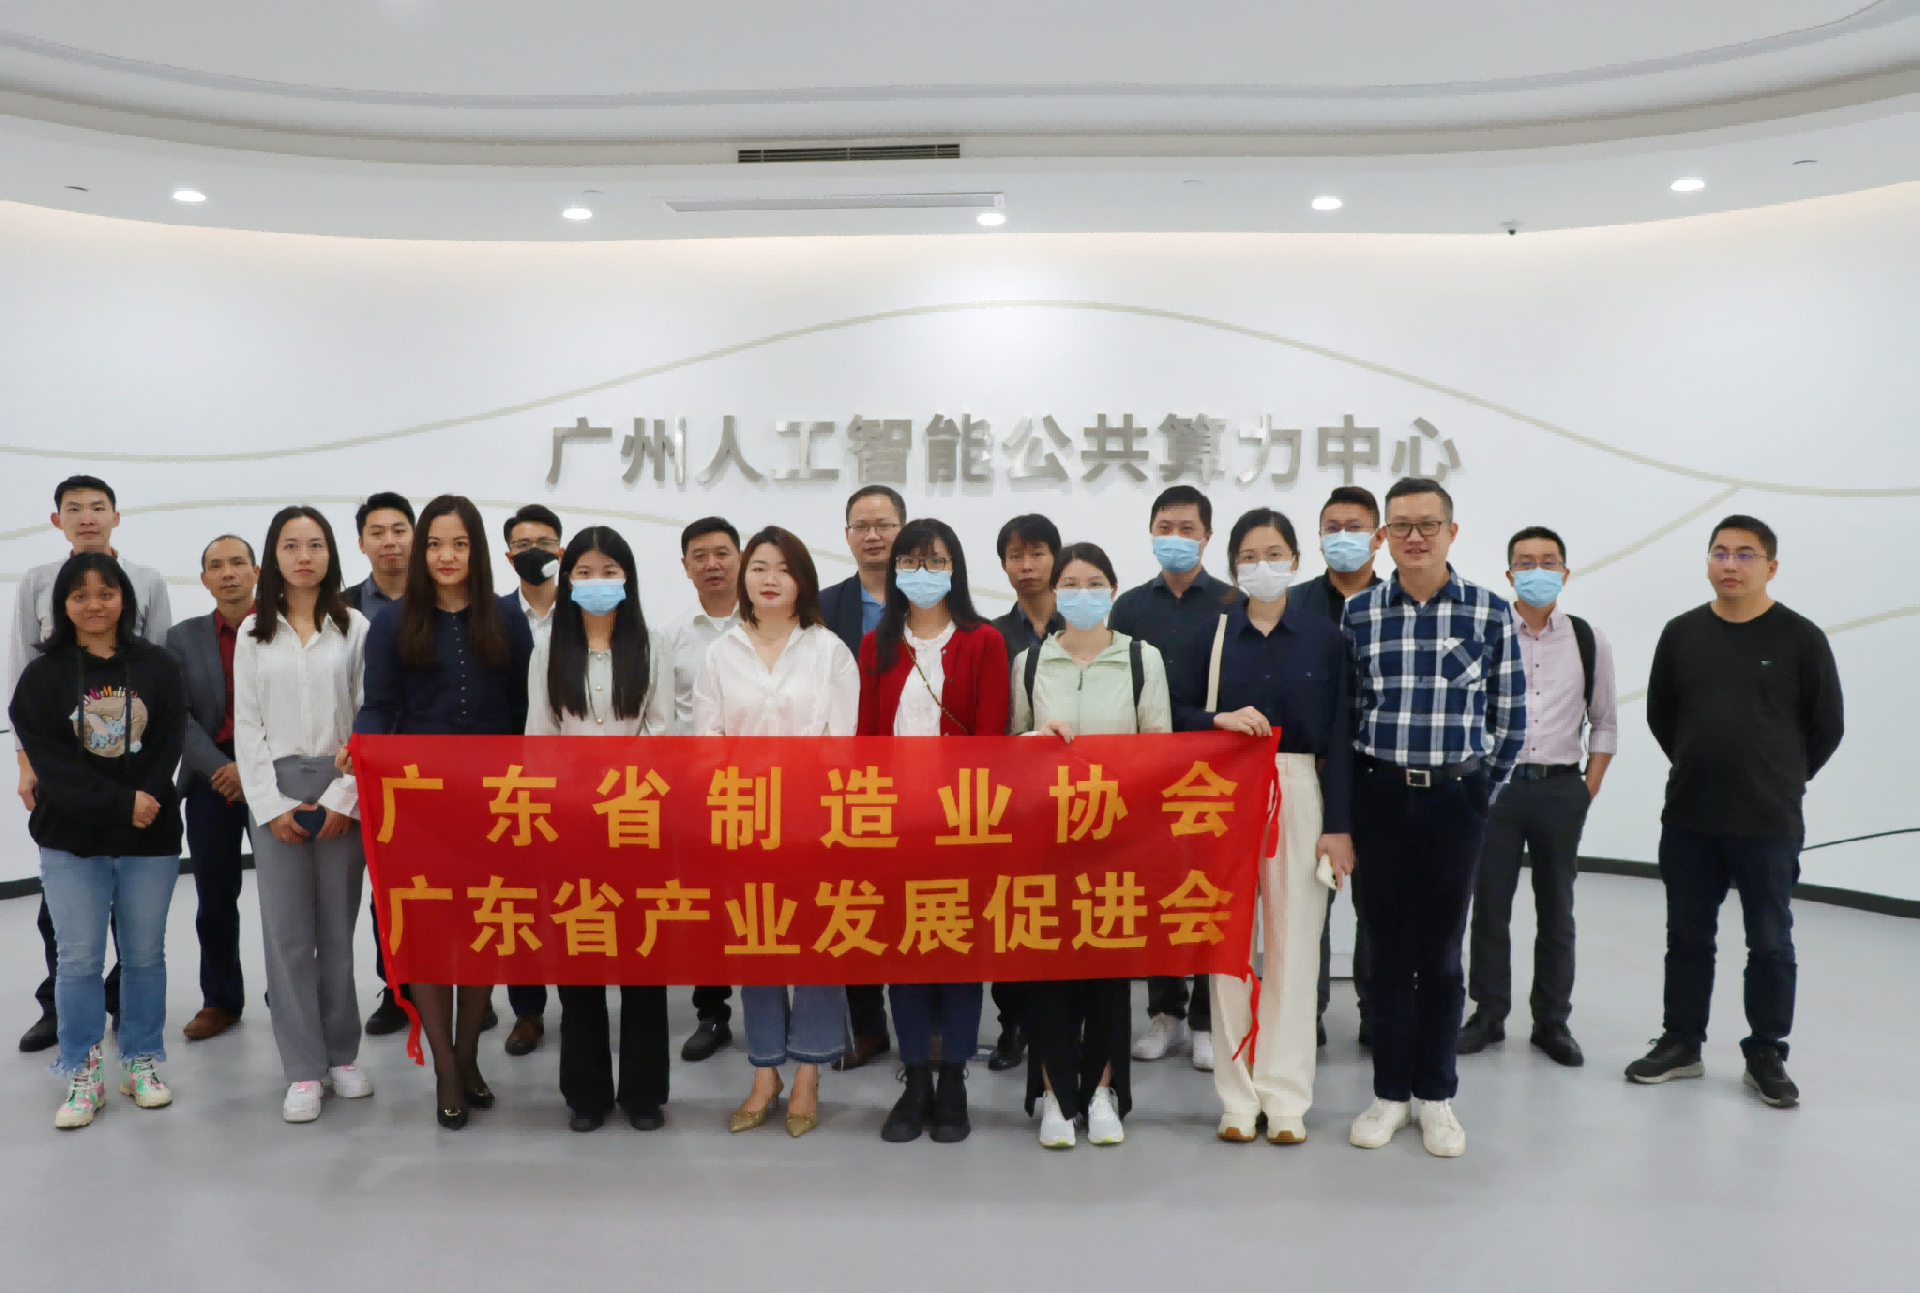 广东省制造业协会举办“走进广州人工智能公共算力中心”暨专题培训活动